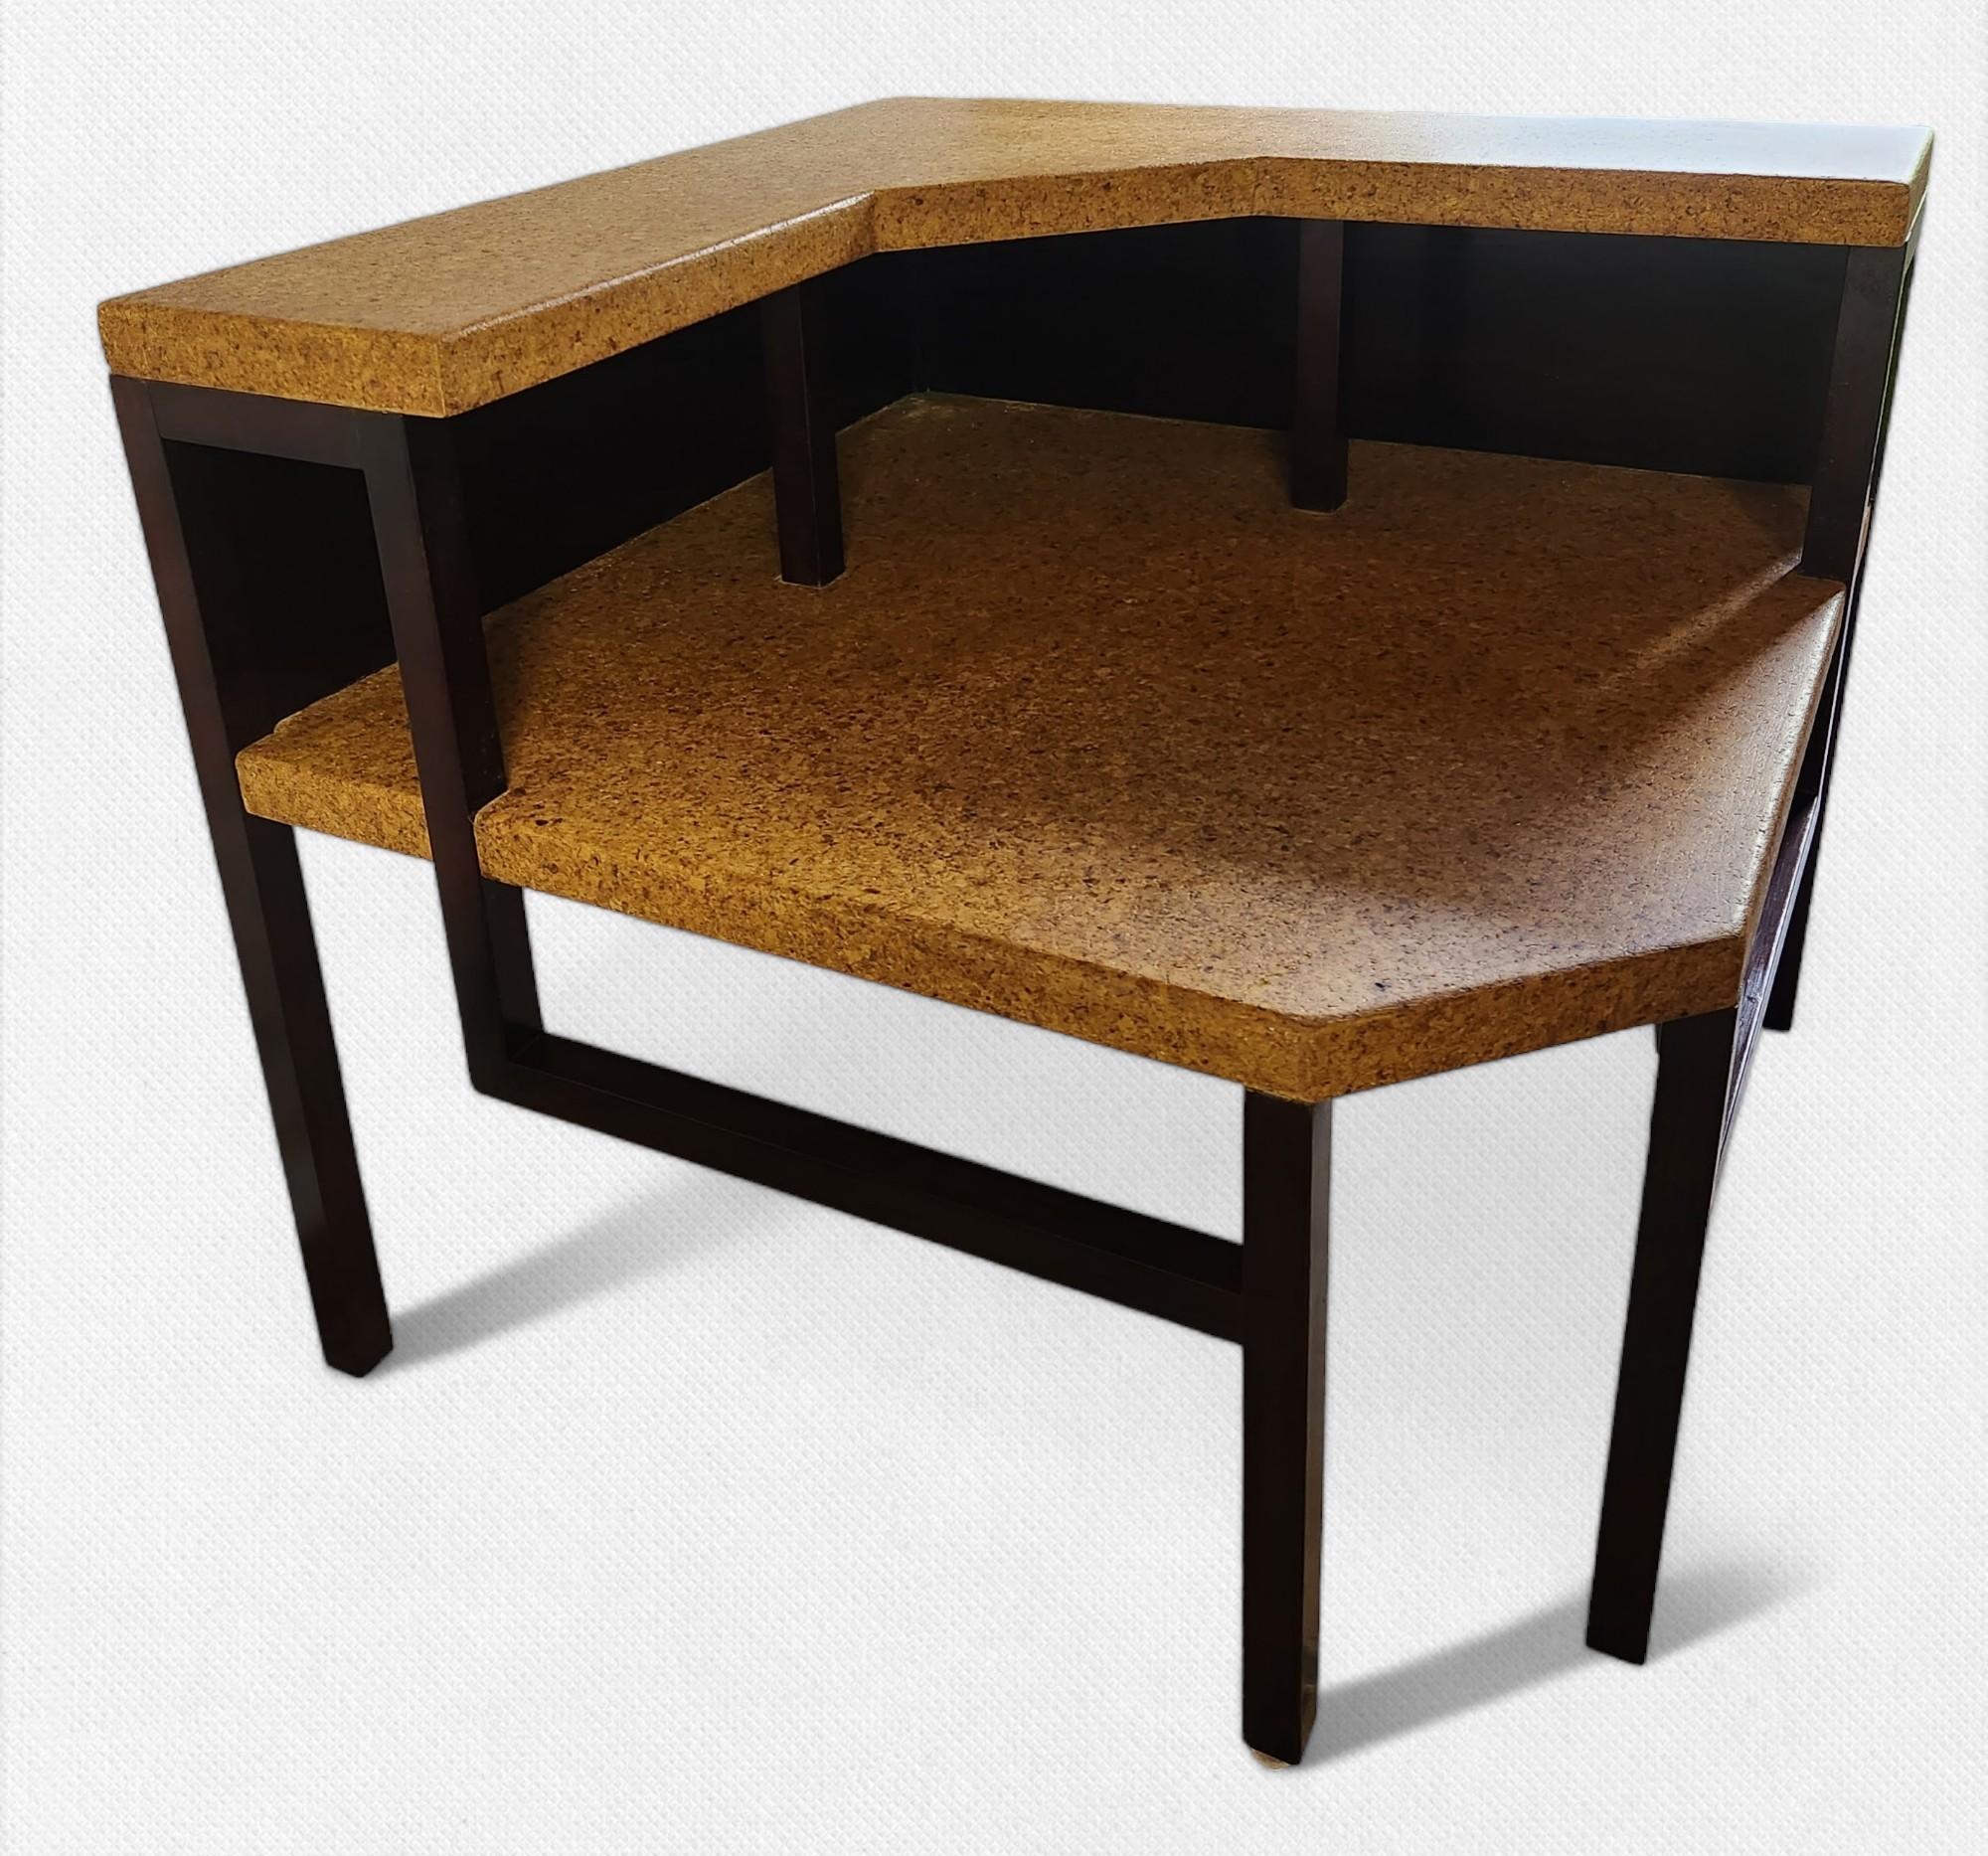 Table d'angle de Paul Frankl pour Johnson Furniture Company de Grand Rapids, Michigan, dans les années 1950.
Le cadre est en érable teinté palissandre avec des plateaux en liège laqué transparent.
Restauré en très bon état, sans aucun problème.